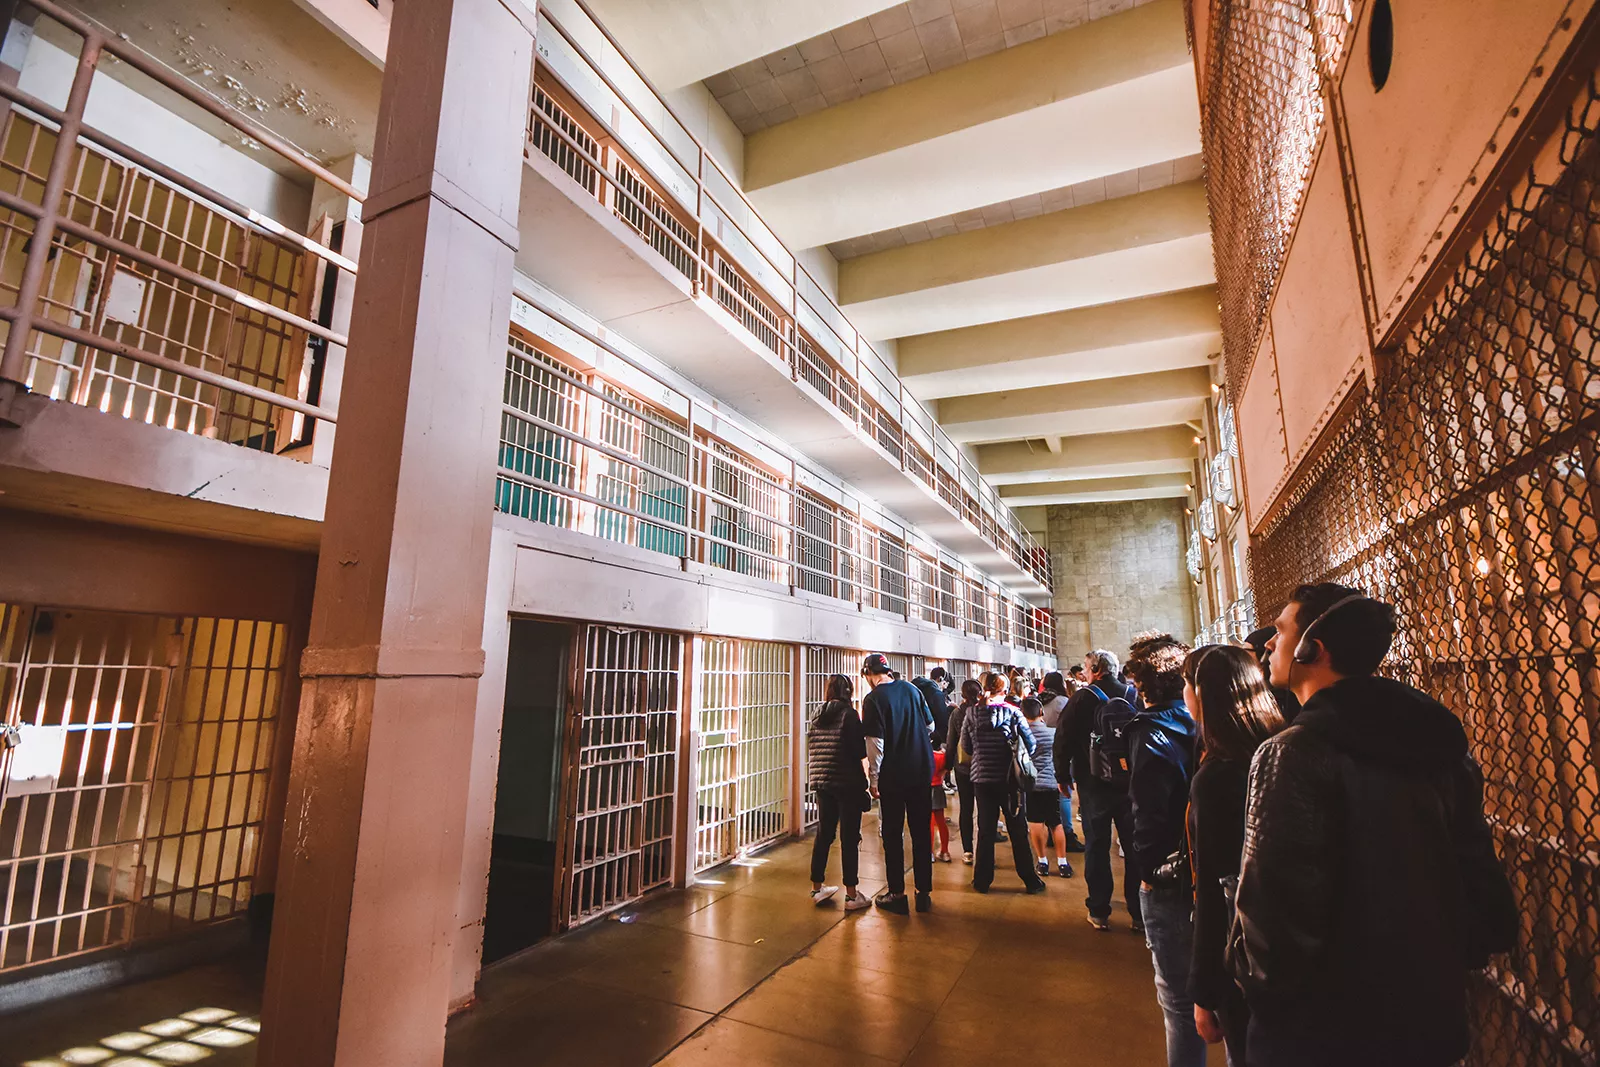 Alcatraz Prison Cells 1600